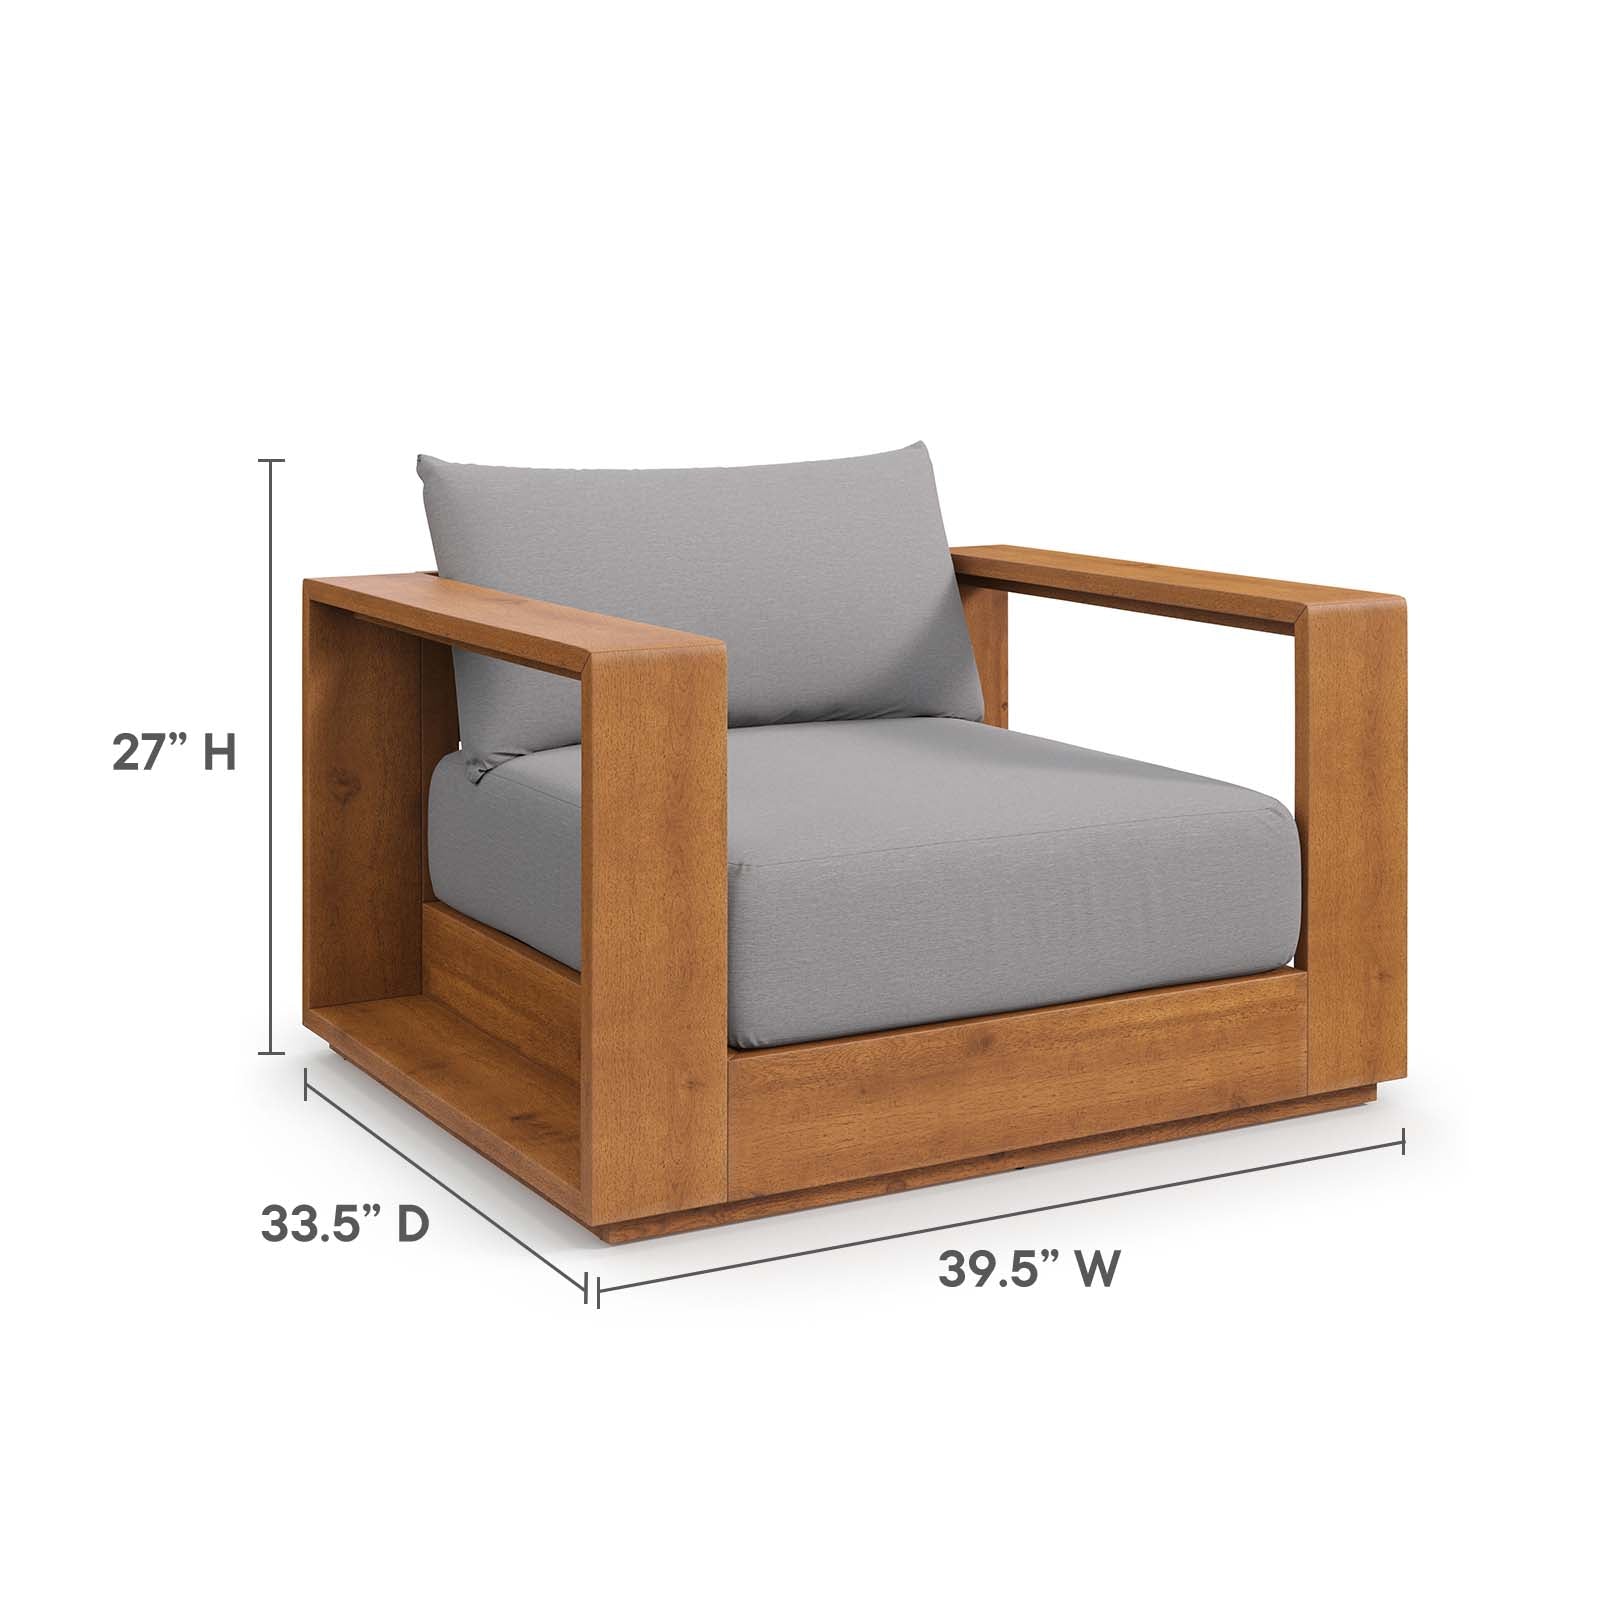 Modway - Tahoe Outdoor Patio Acacia Wood 5-Piece Furniture Set - Light Gray - EEI-6801-NAT-LGR